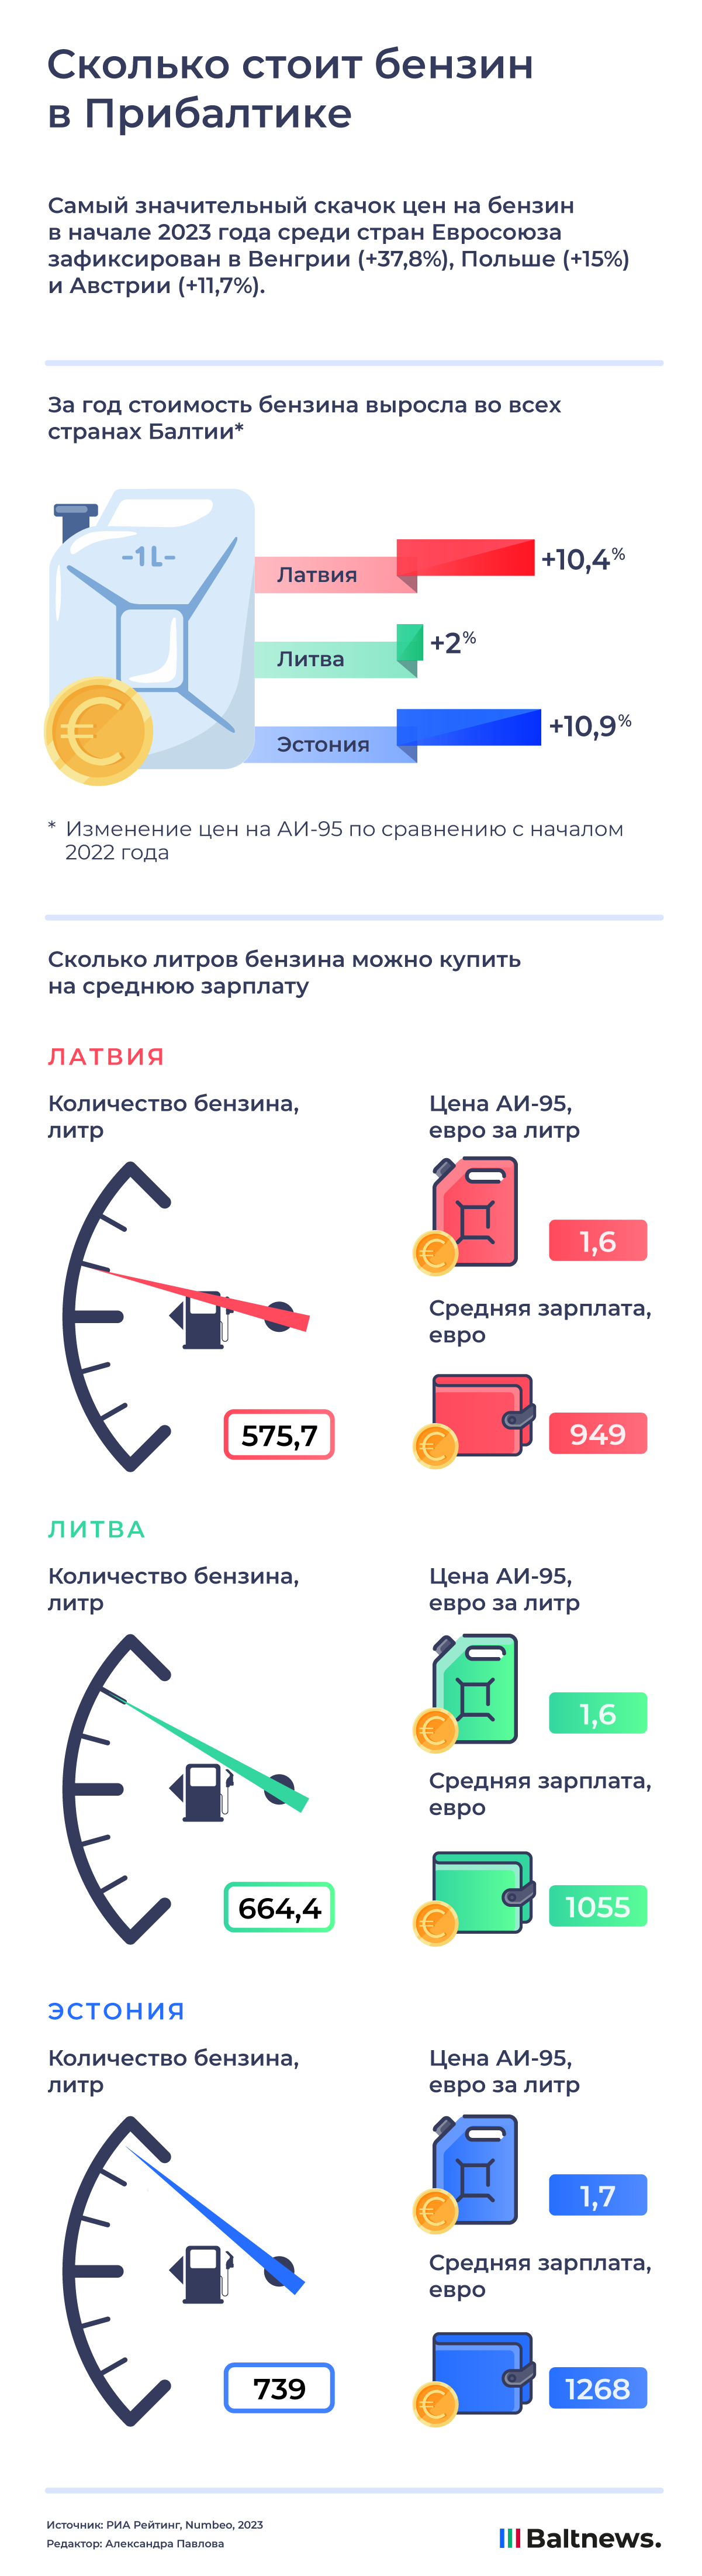 Сколько стоит бензин в Прибалтике